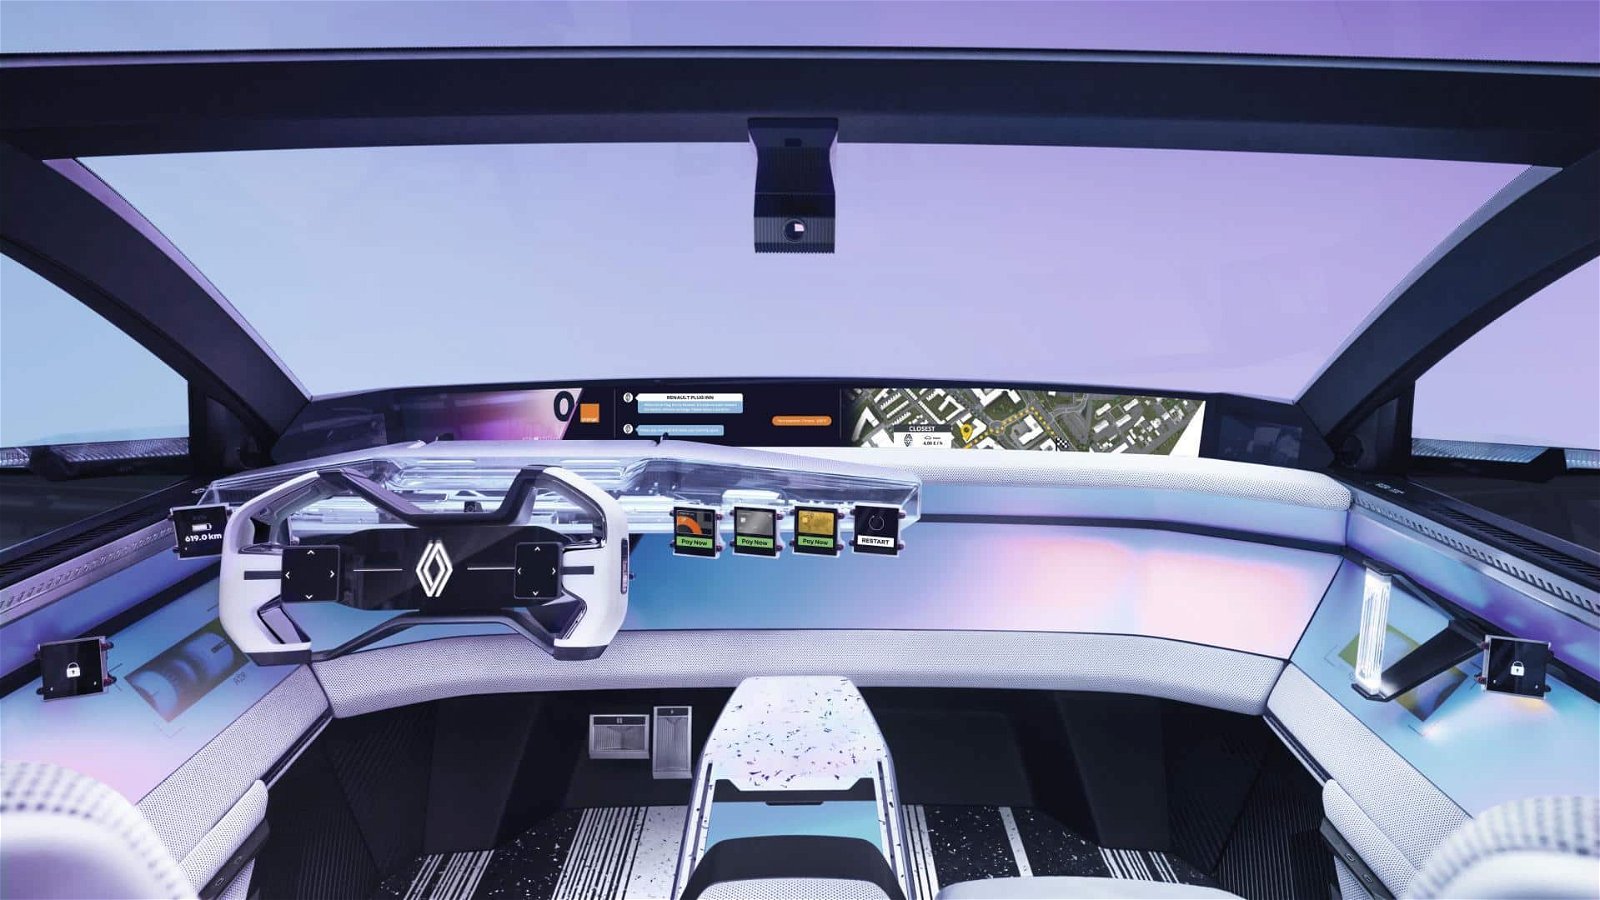 Renault-Konzept-H1st-vision-Cockpit